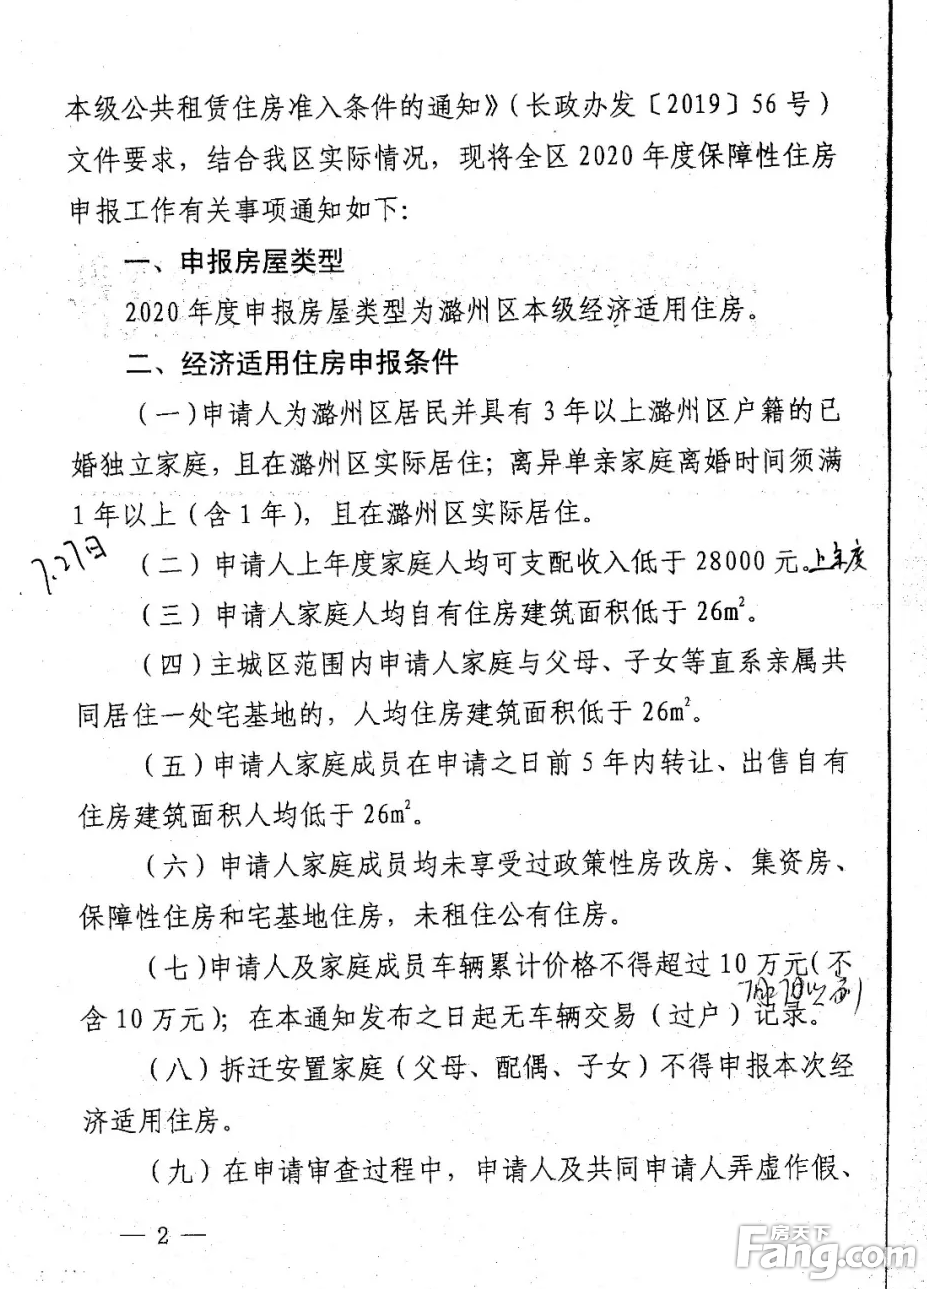 潞州区政府发布关于2020年度申报保障性住房工作的通知